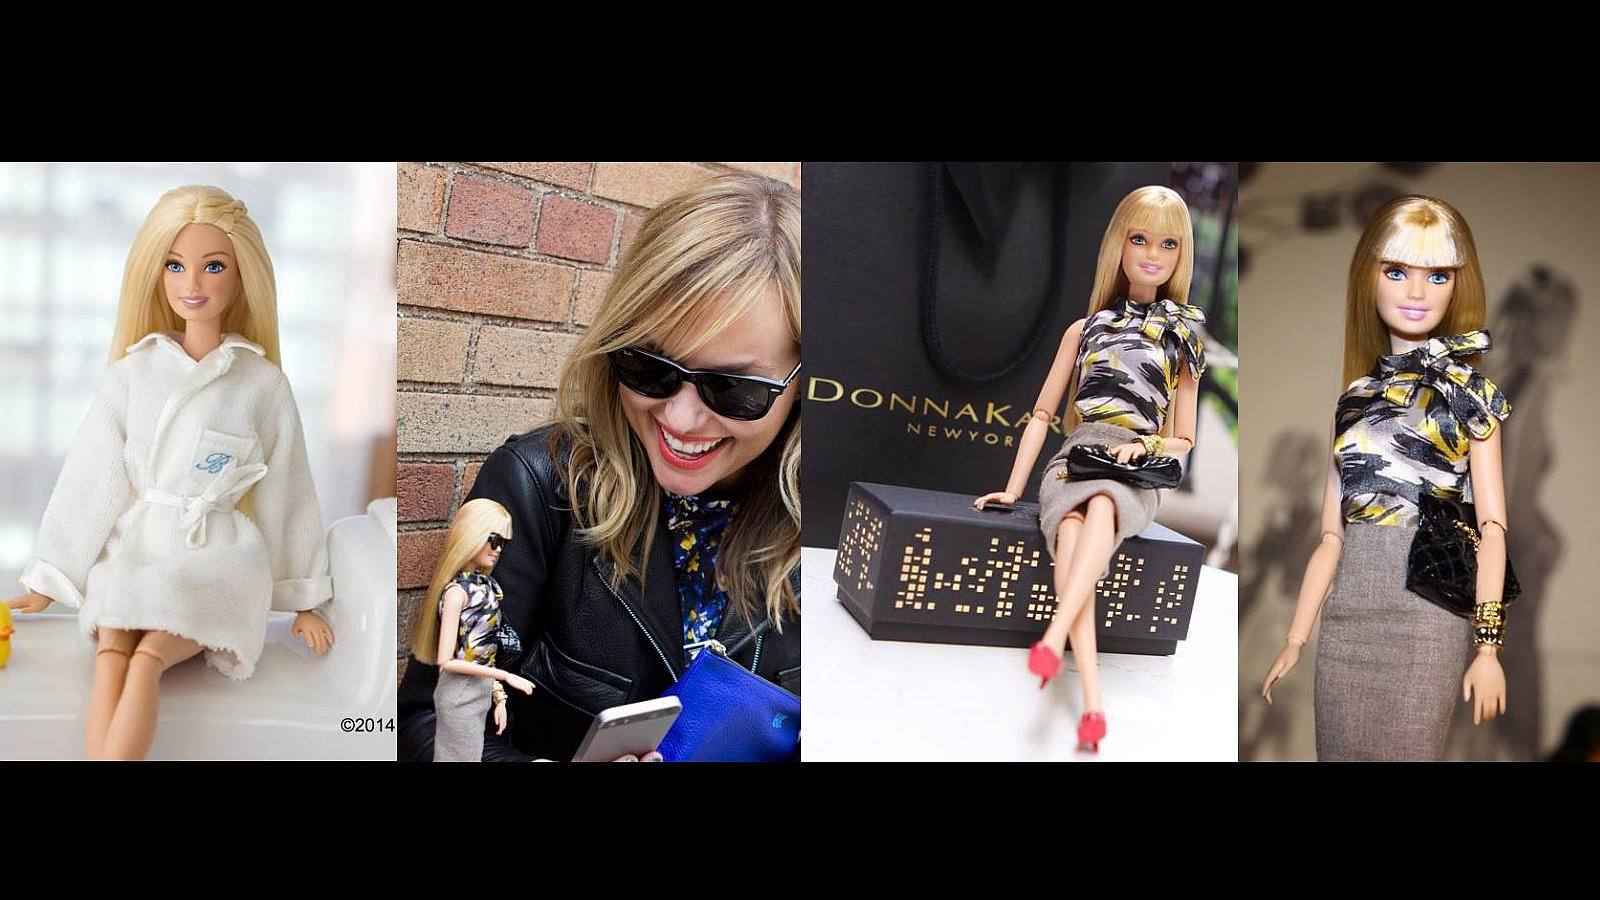 Aunque glamoursa, trabajar en la New York Fashion Week puede ser agotador así que la muñeca decide darse un baño de espuma antes de encontrarse con una amiga bloguera y acudir al desfile de Donna Karan